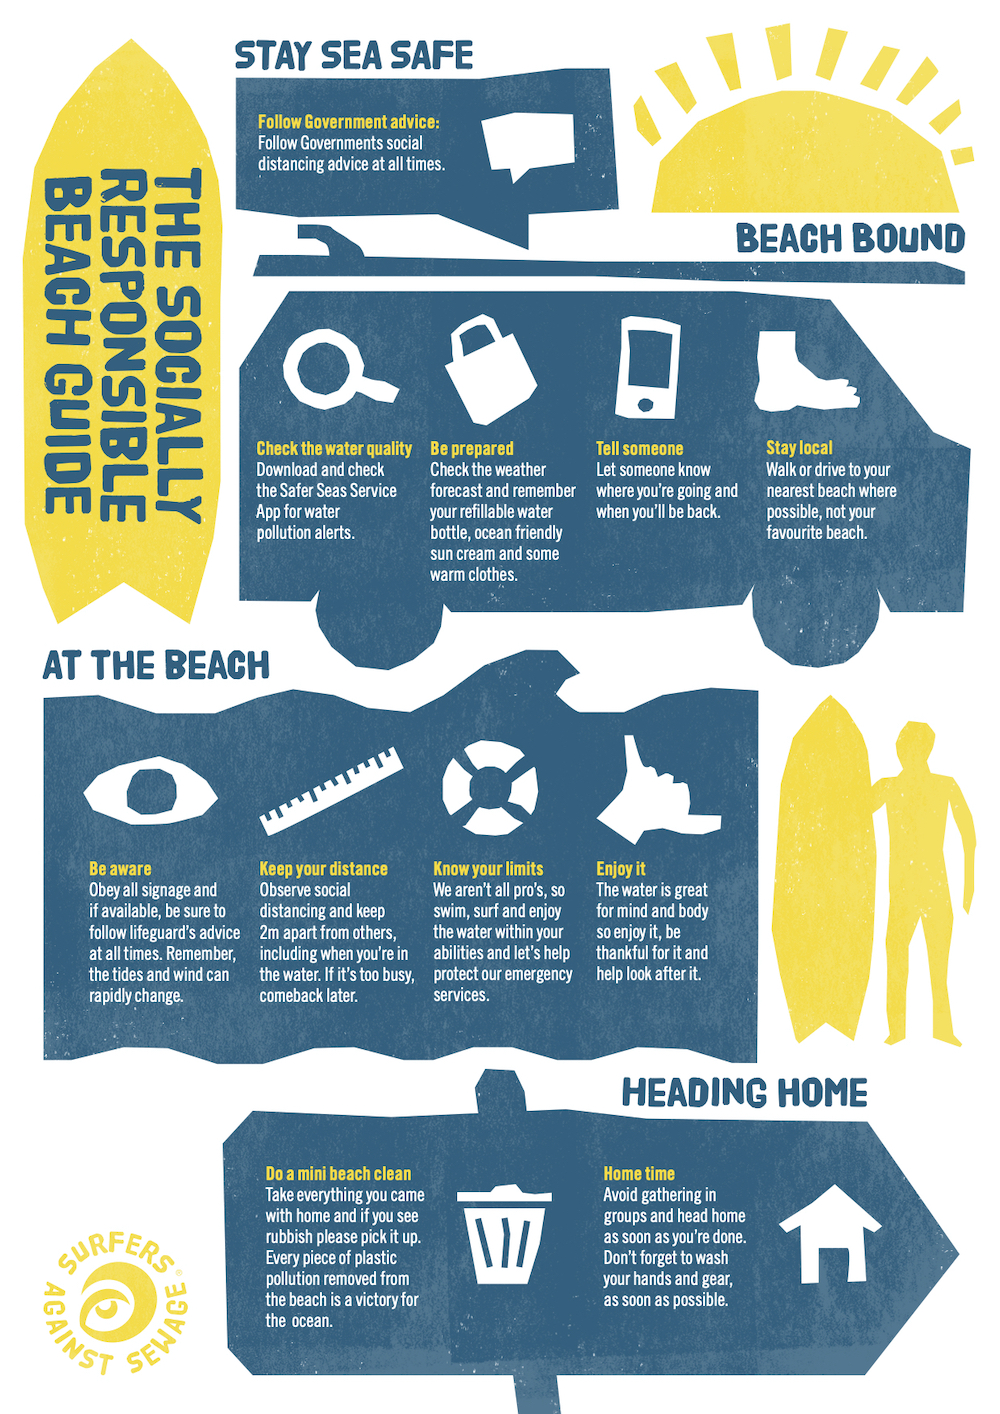 Beach Safety Information